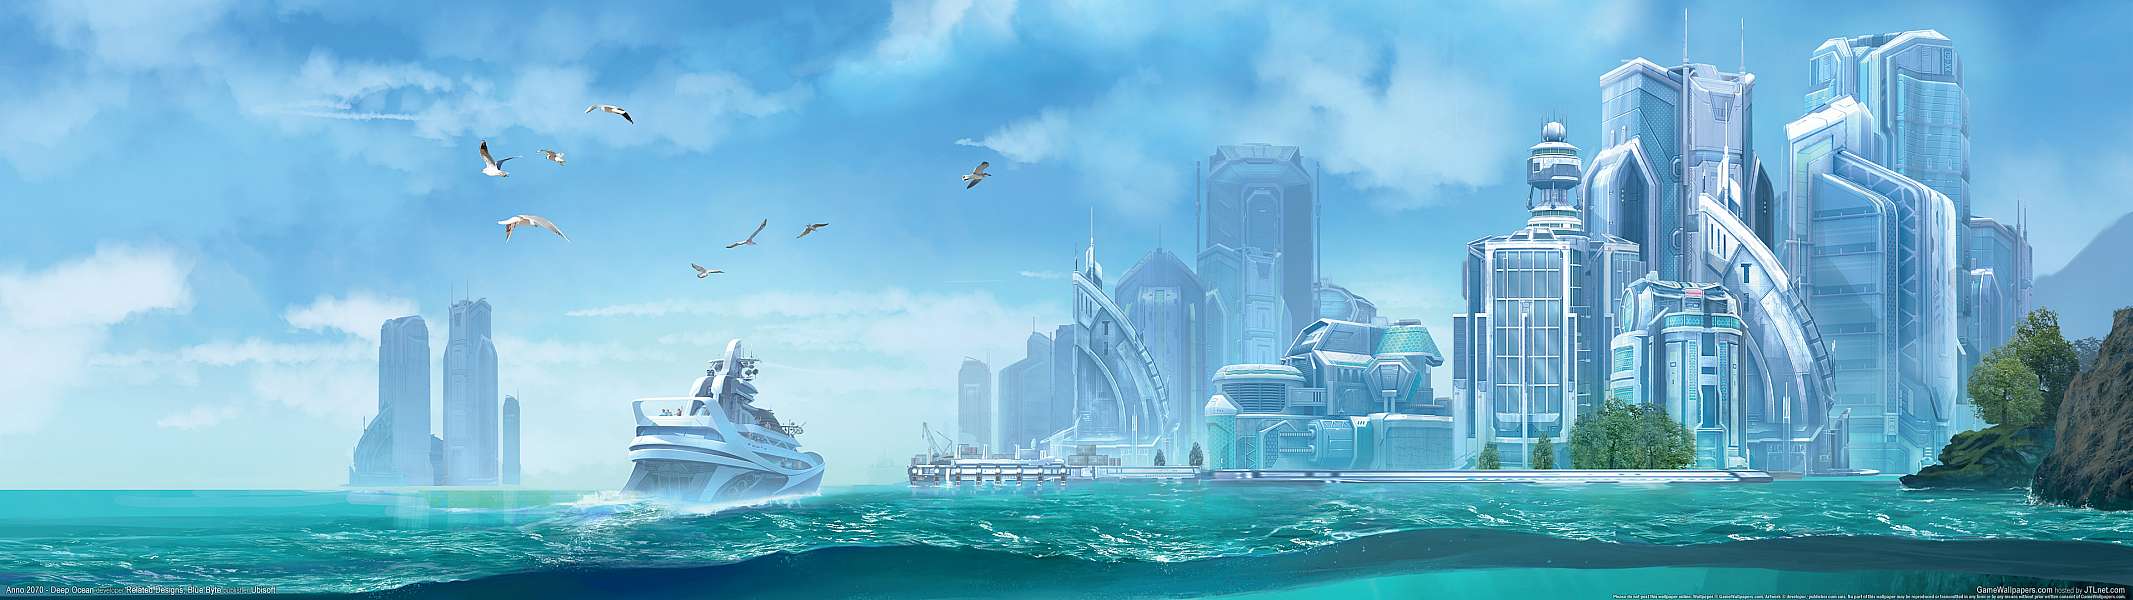 Anno 2070 - Deep Ocean dual screen fond d'écran